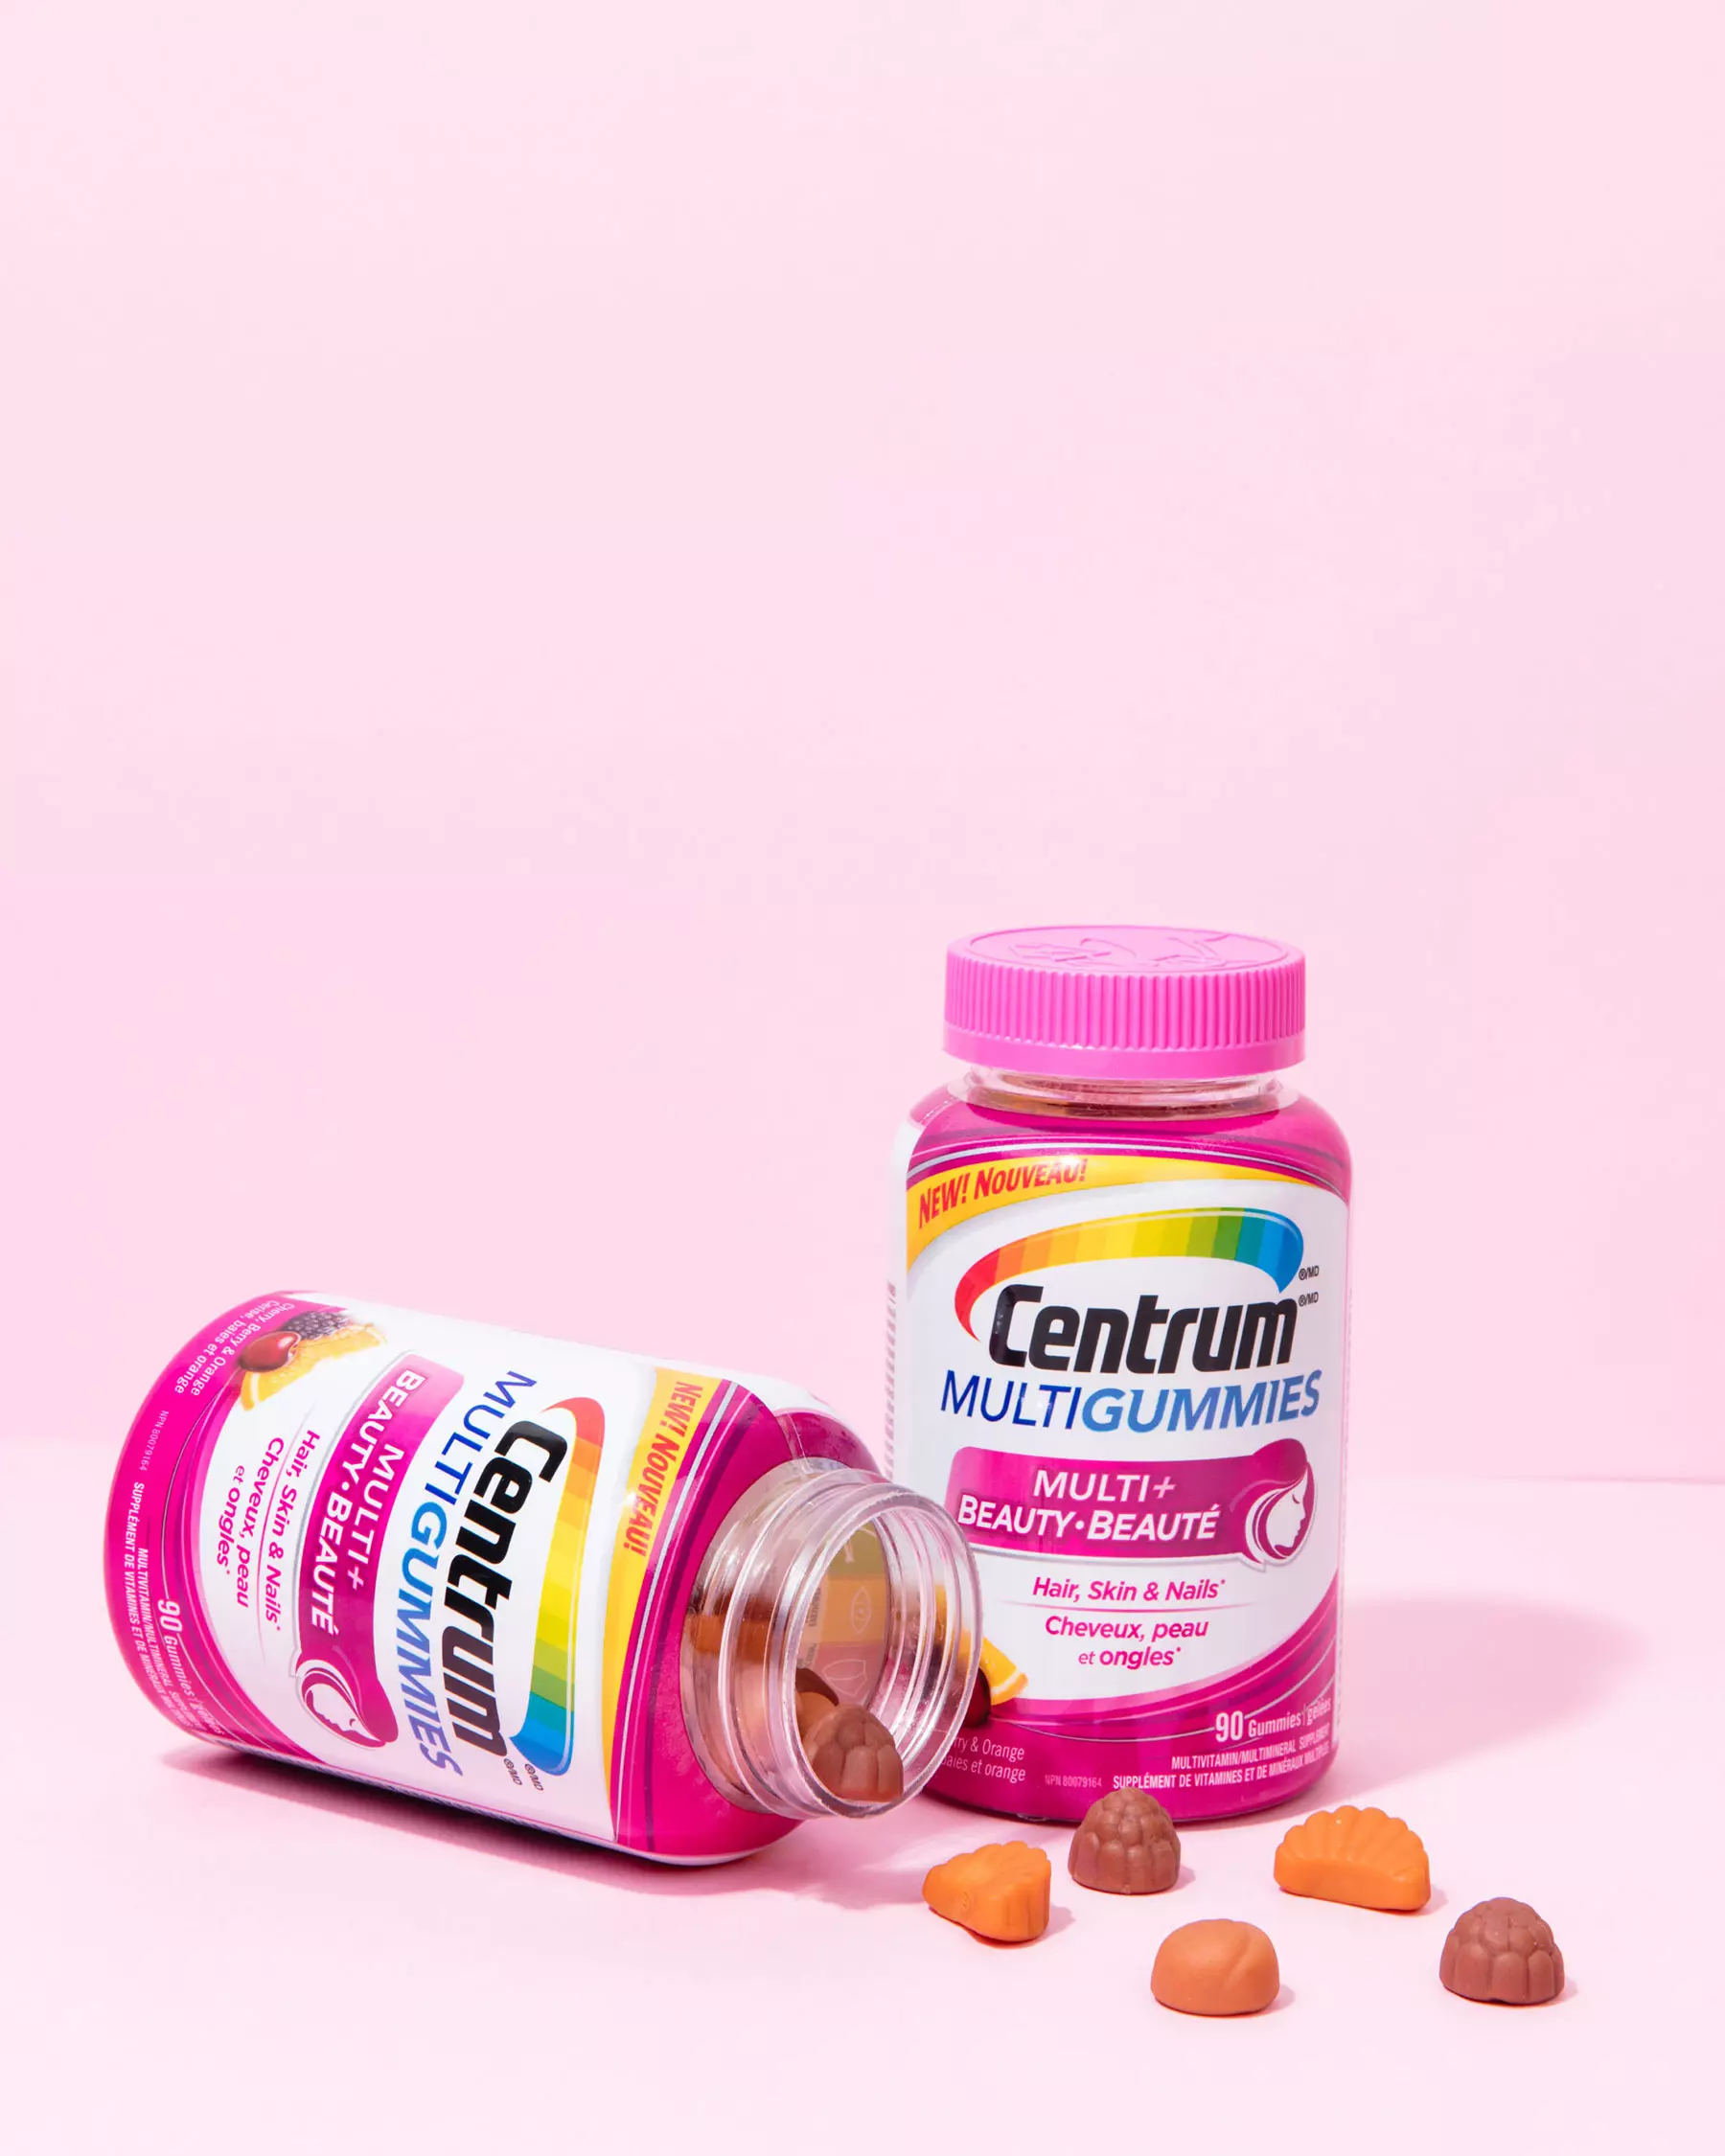 Centrum gummies and vitamins